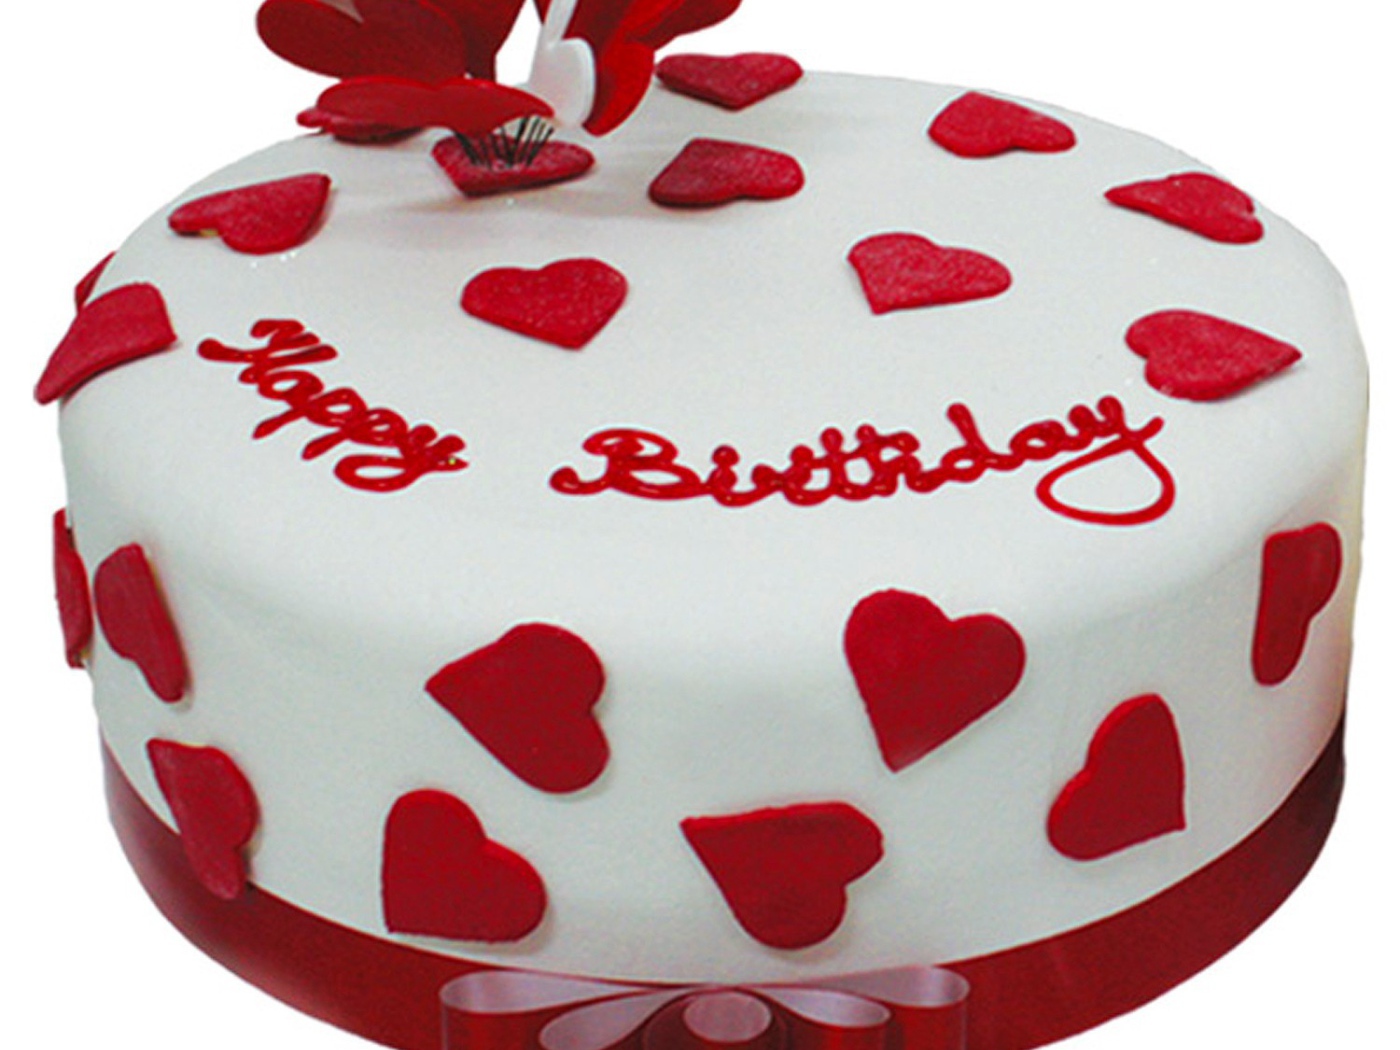 Heart birthday cake